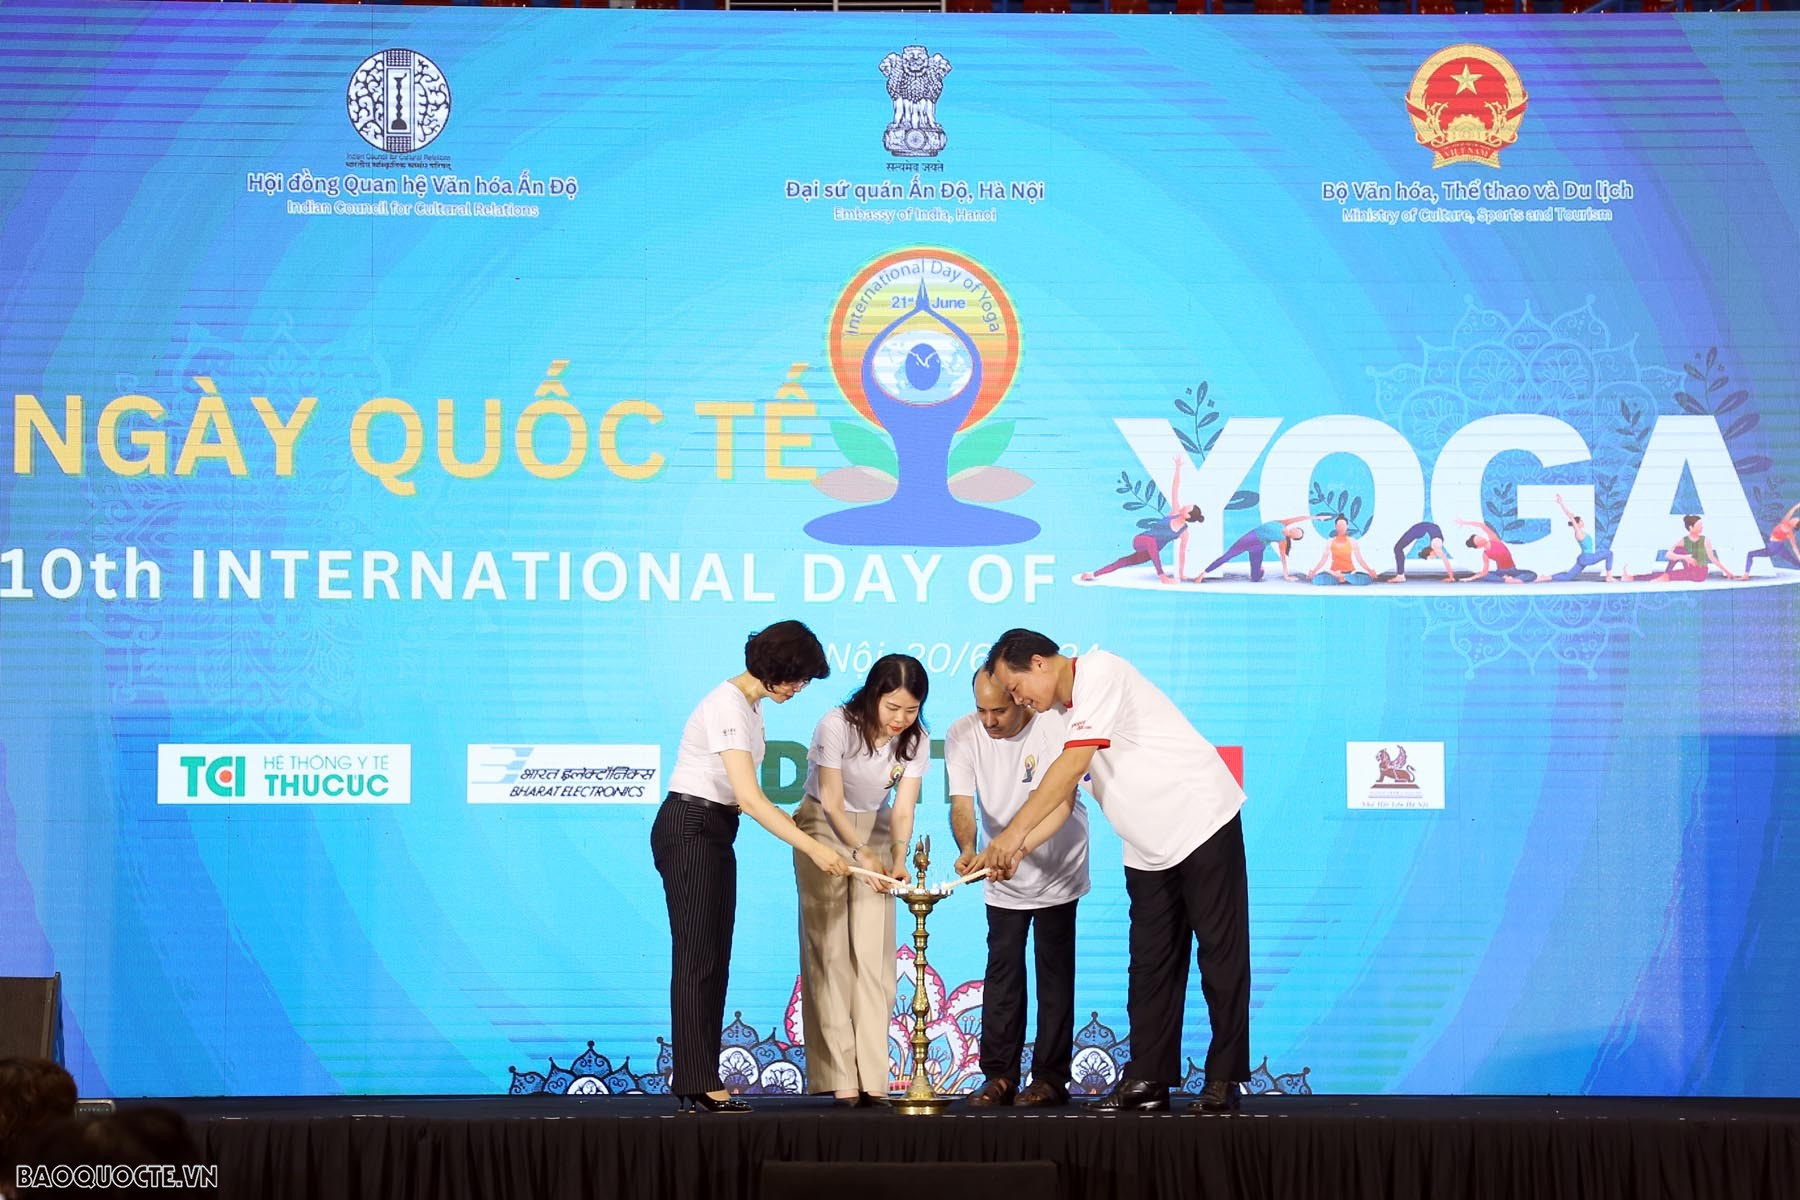 Hàng trăm người tham dự Ngày quốc tế Yoga lần thứ 10